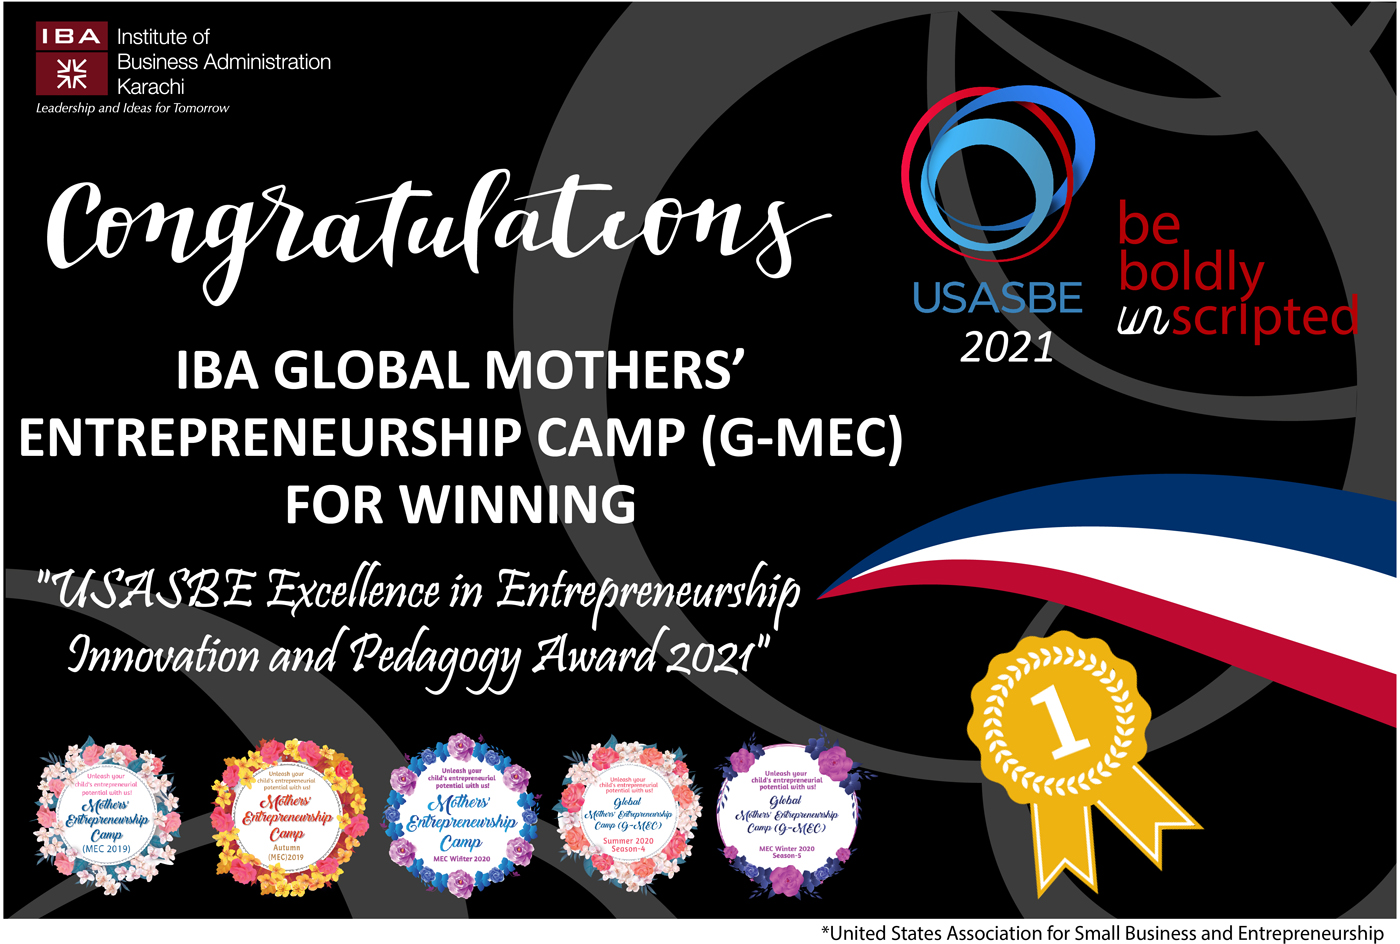 Winner of USASBE Excellence in Entrepreneurship Innovation and Pedagogy Award 2021